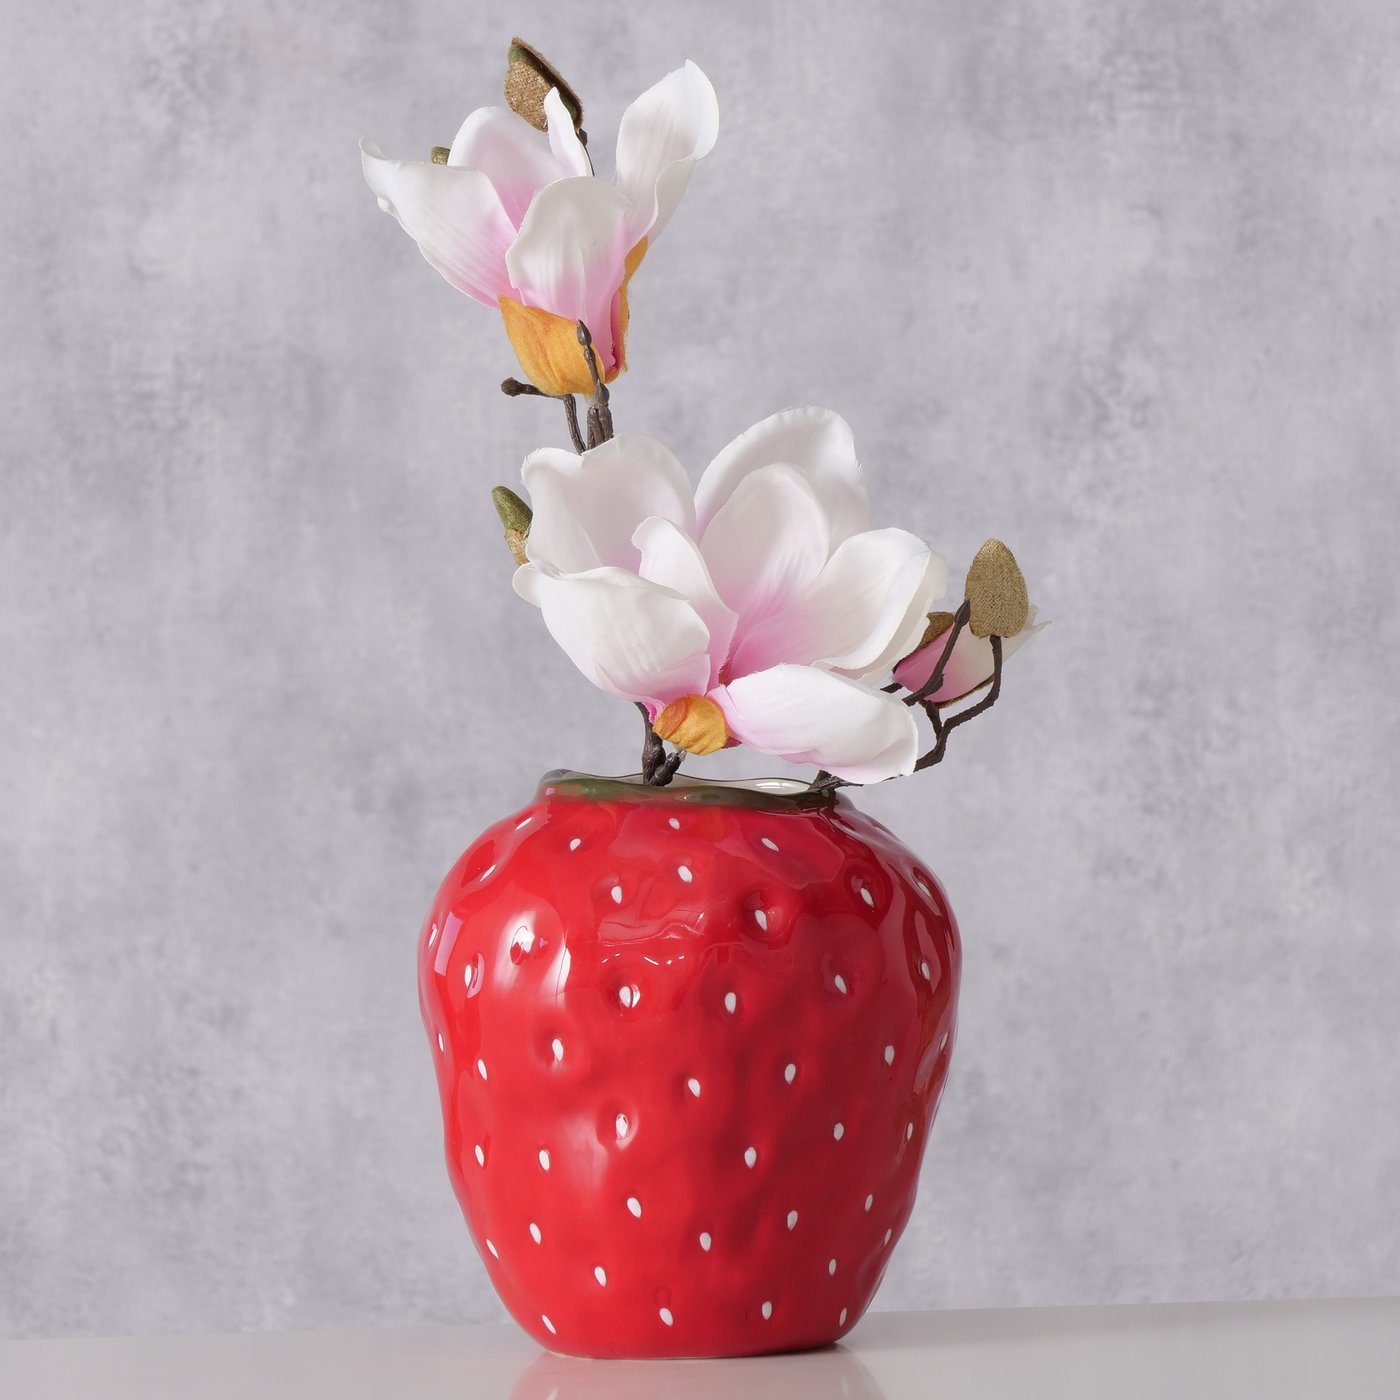 BOLTZE Dekovase "Strawberry" Erdbeere in rot aus Keramik (Dolomit), Vase Blumenvase